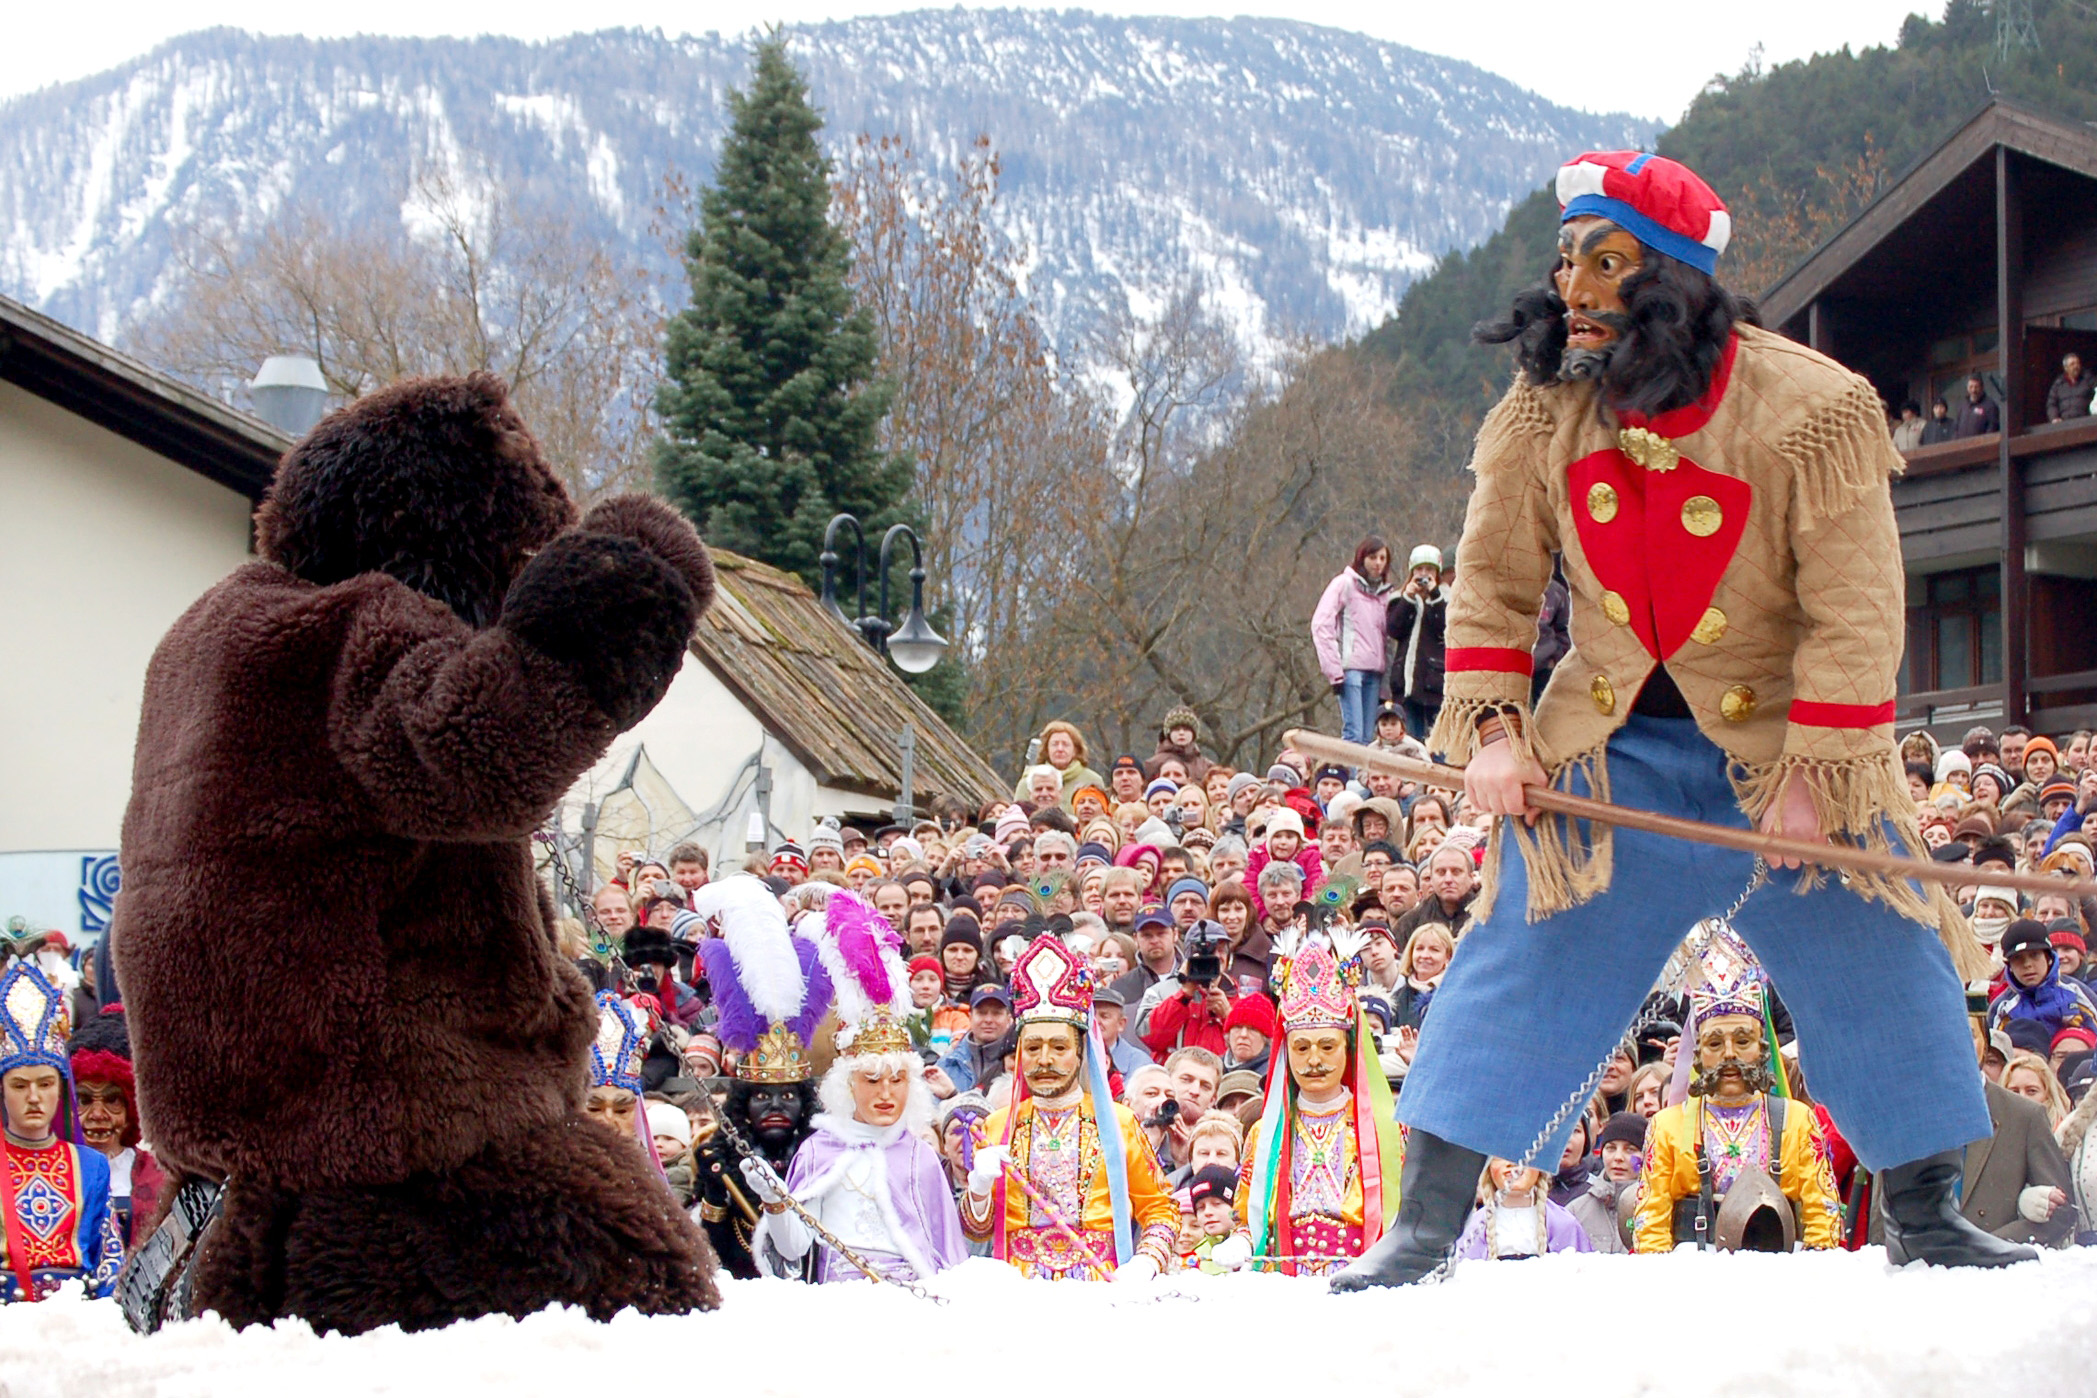 Carnevale in Tirolo